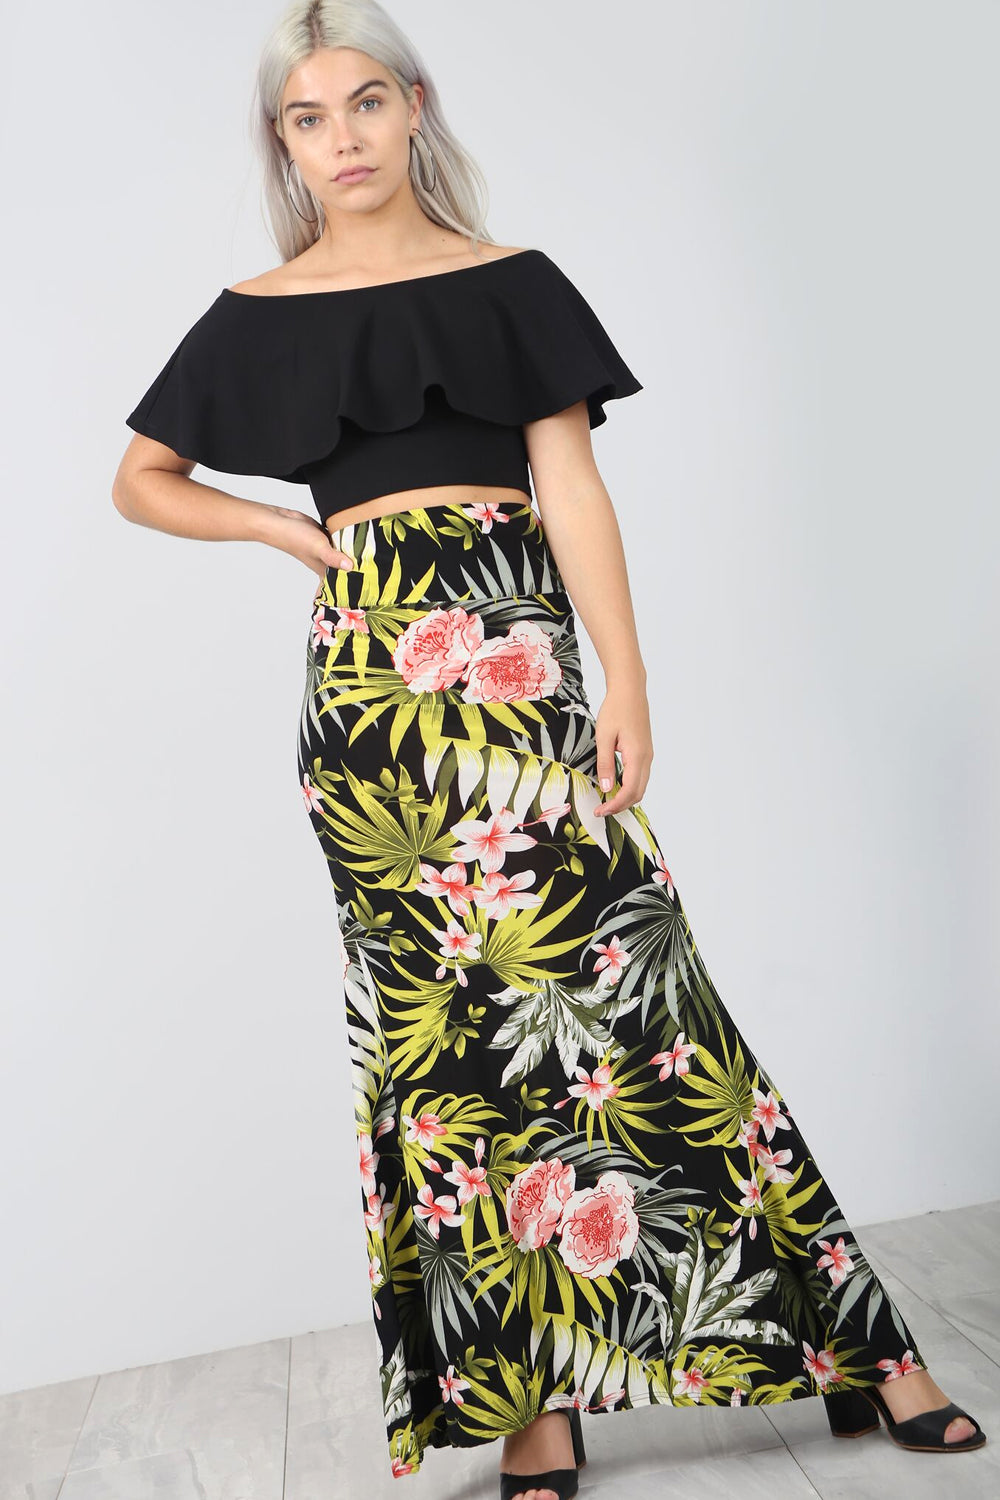 High Waist Green Tropical Print Maxi Skirt - bejealous-com